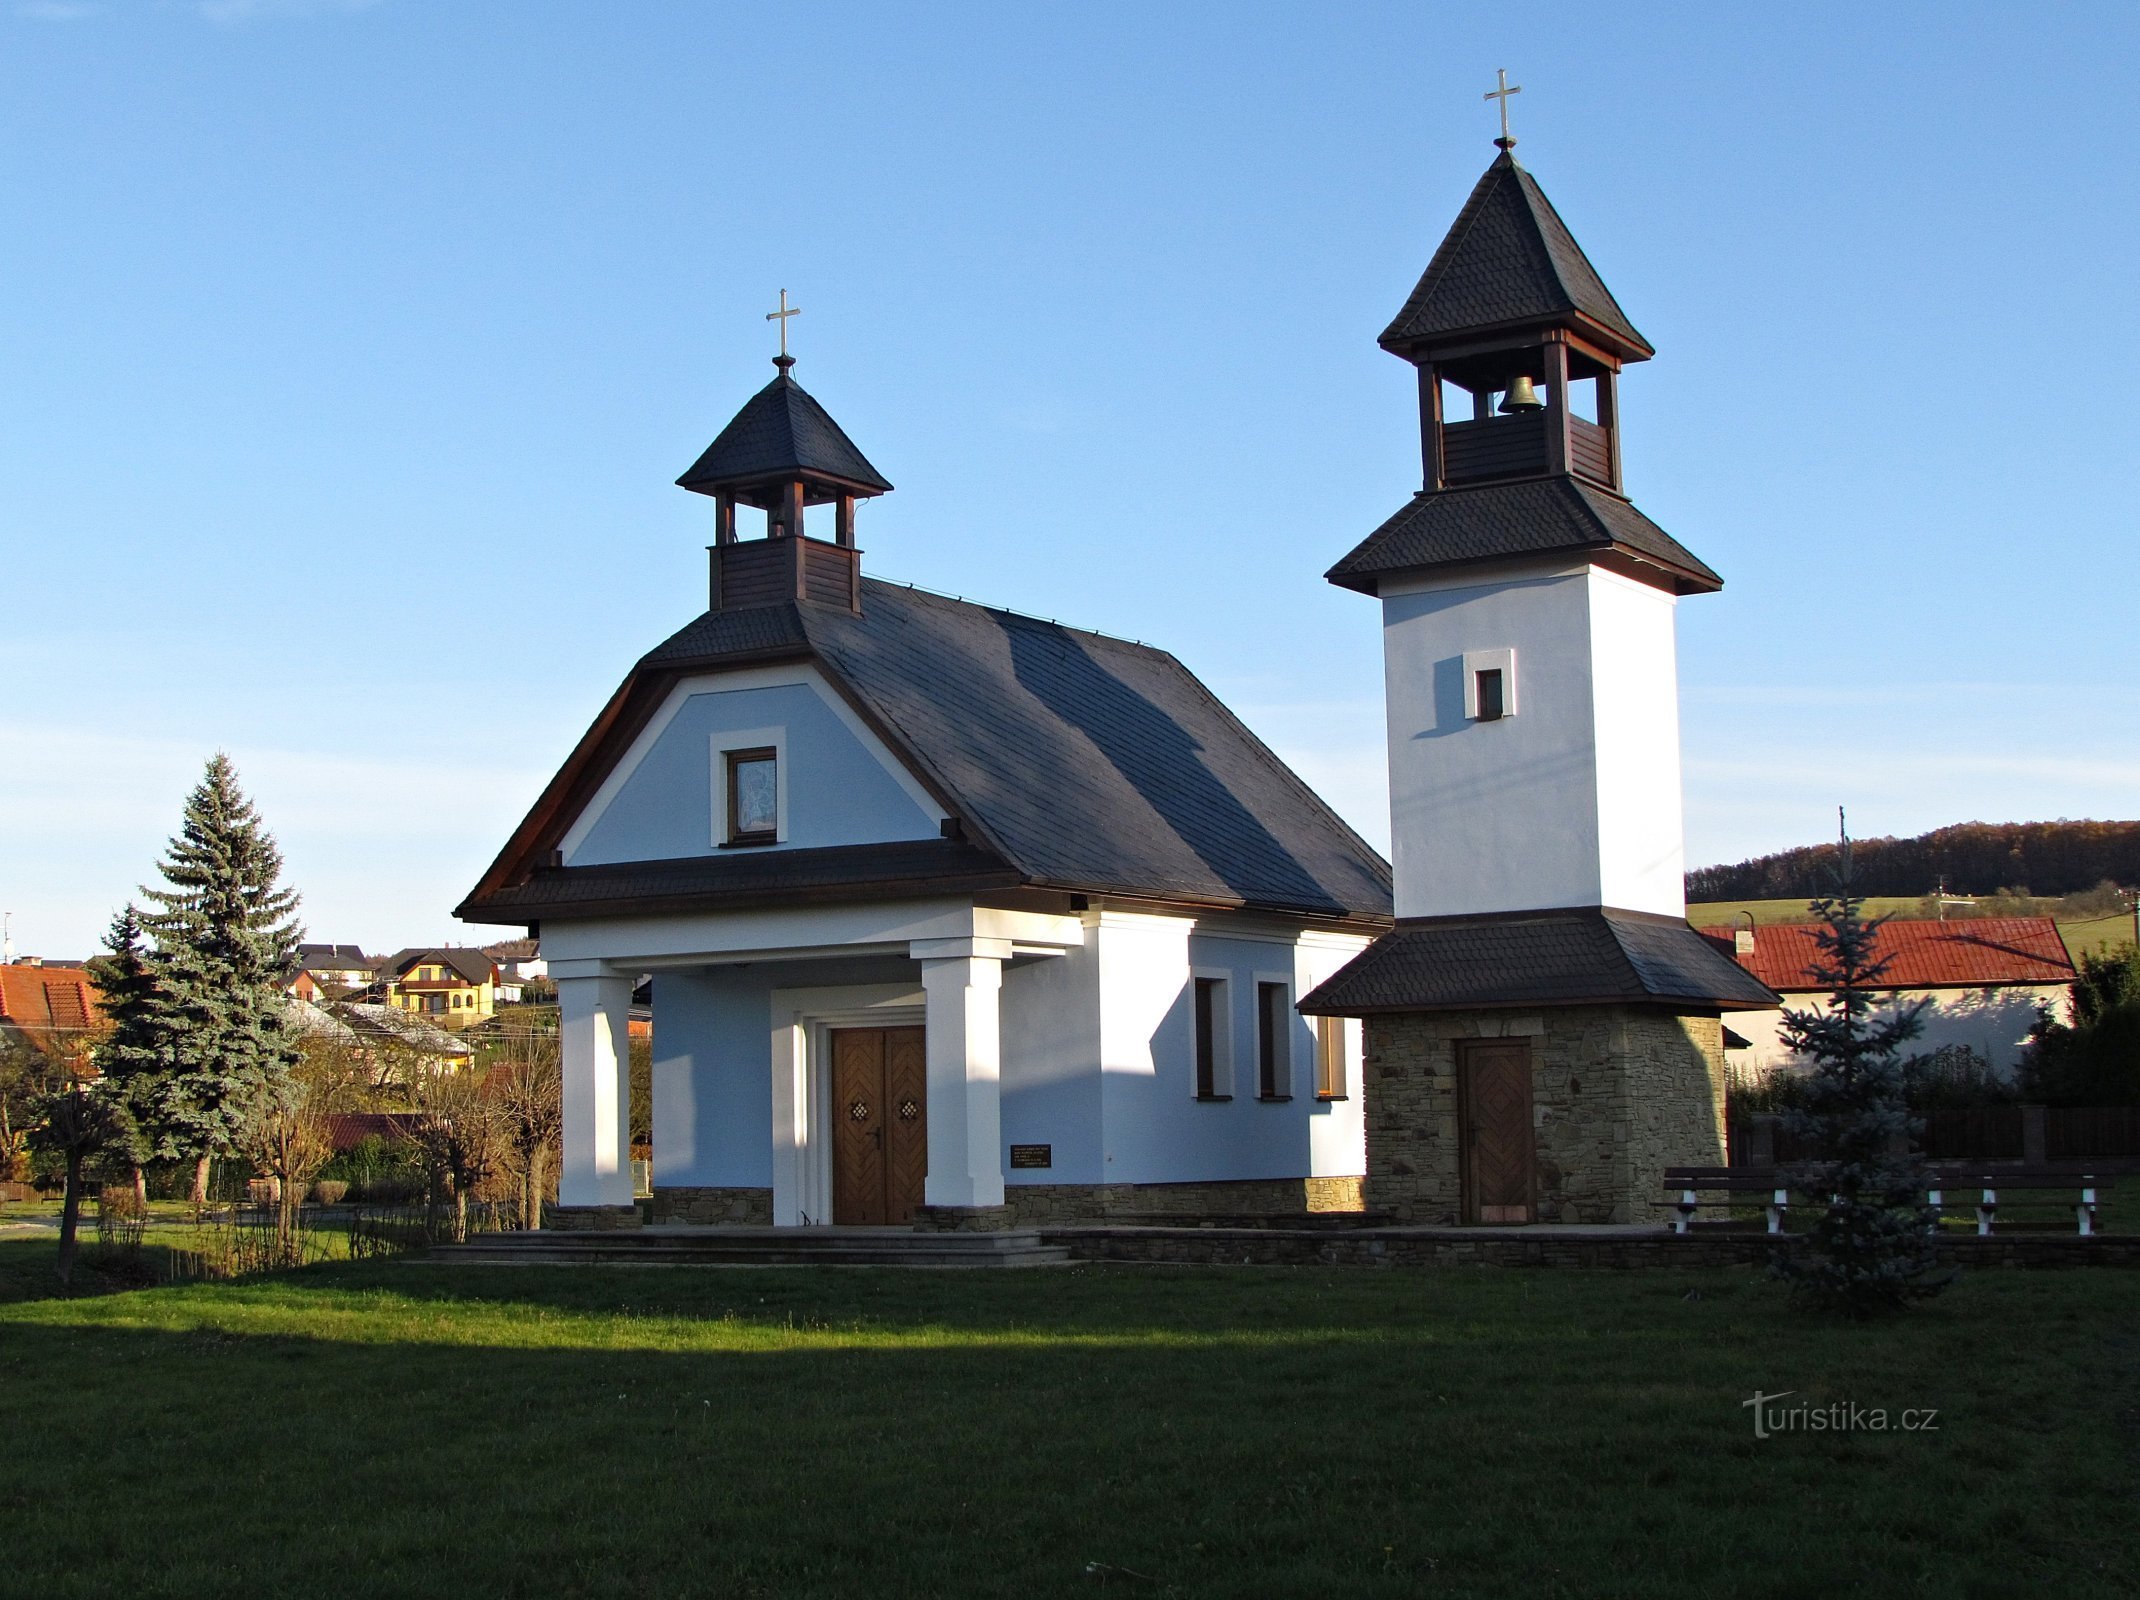 Doubravy - chapel of St. Vojtěch